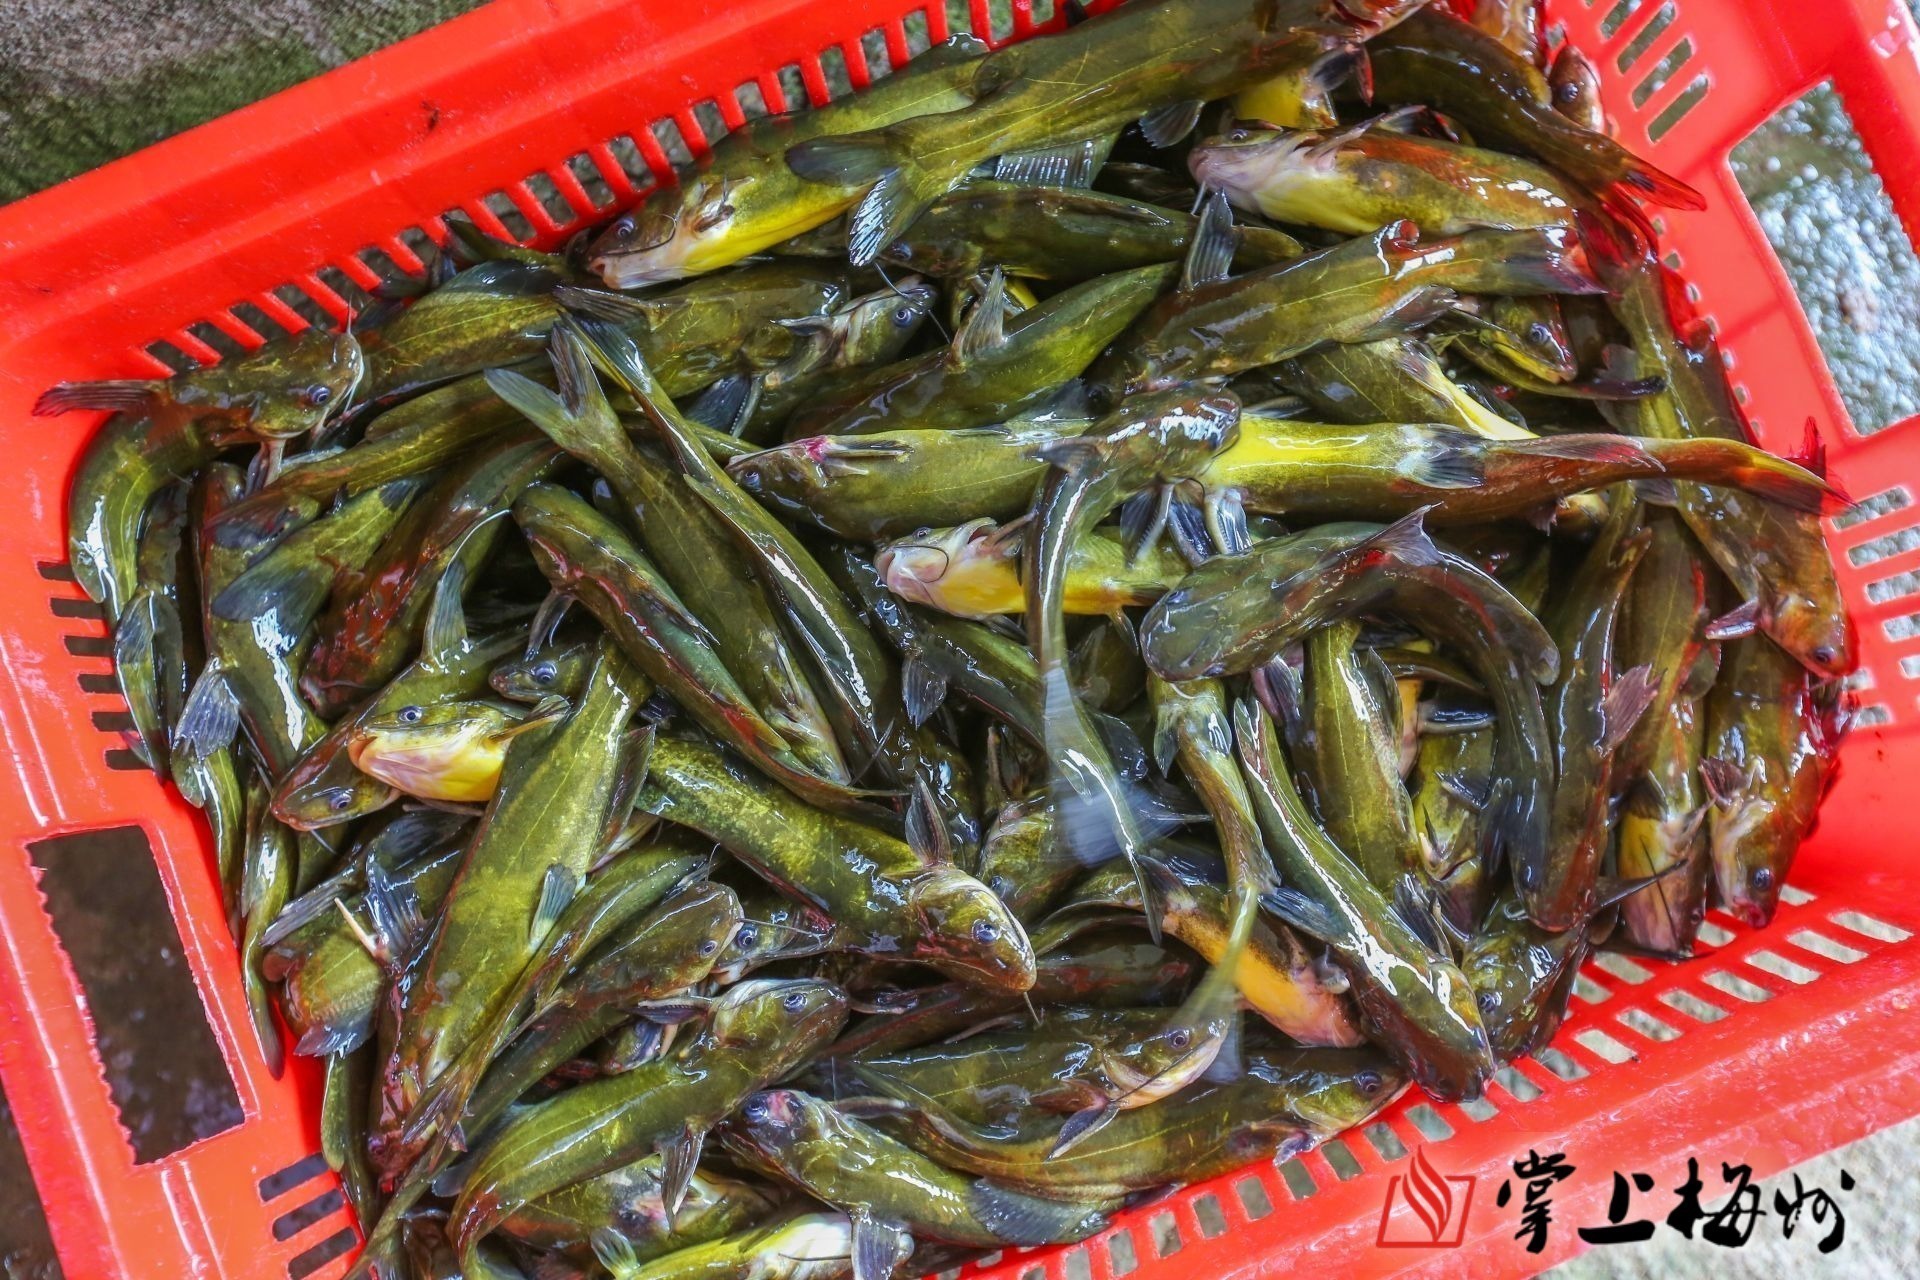 广东梅县区丙村镇的小小黄骨鱼成了致富金娃娃